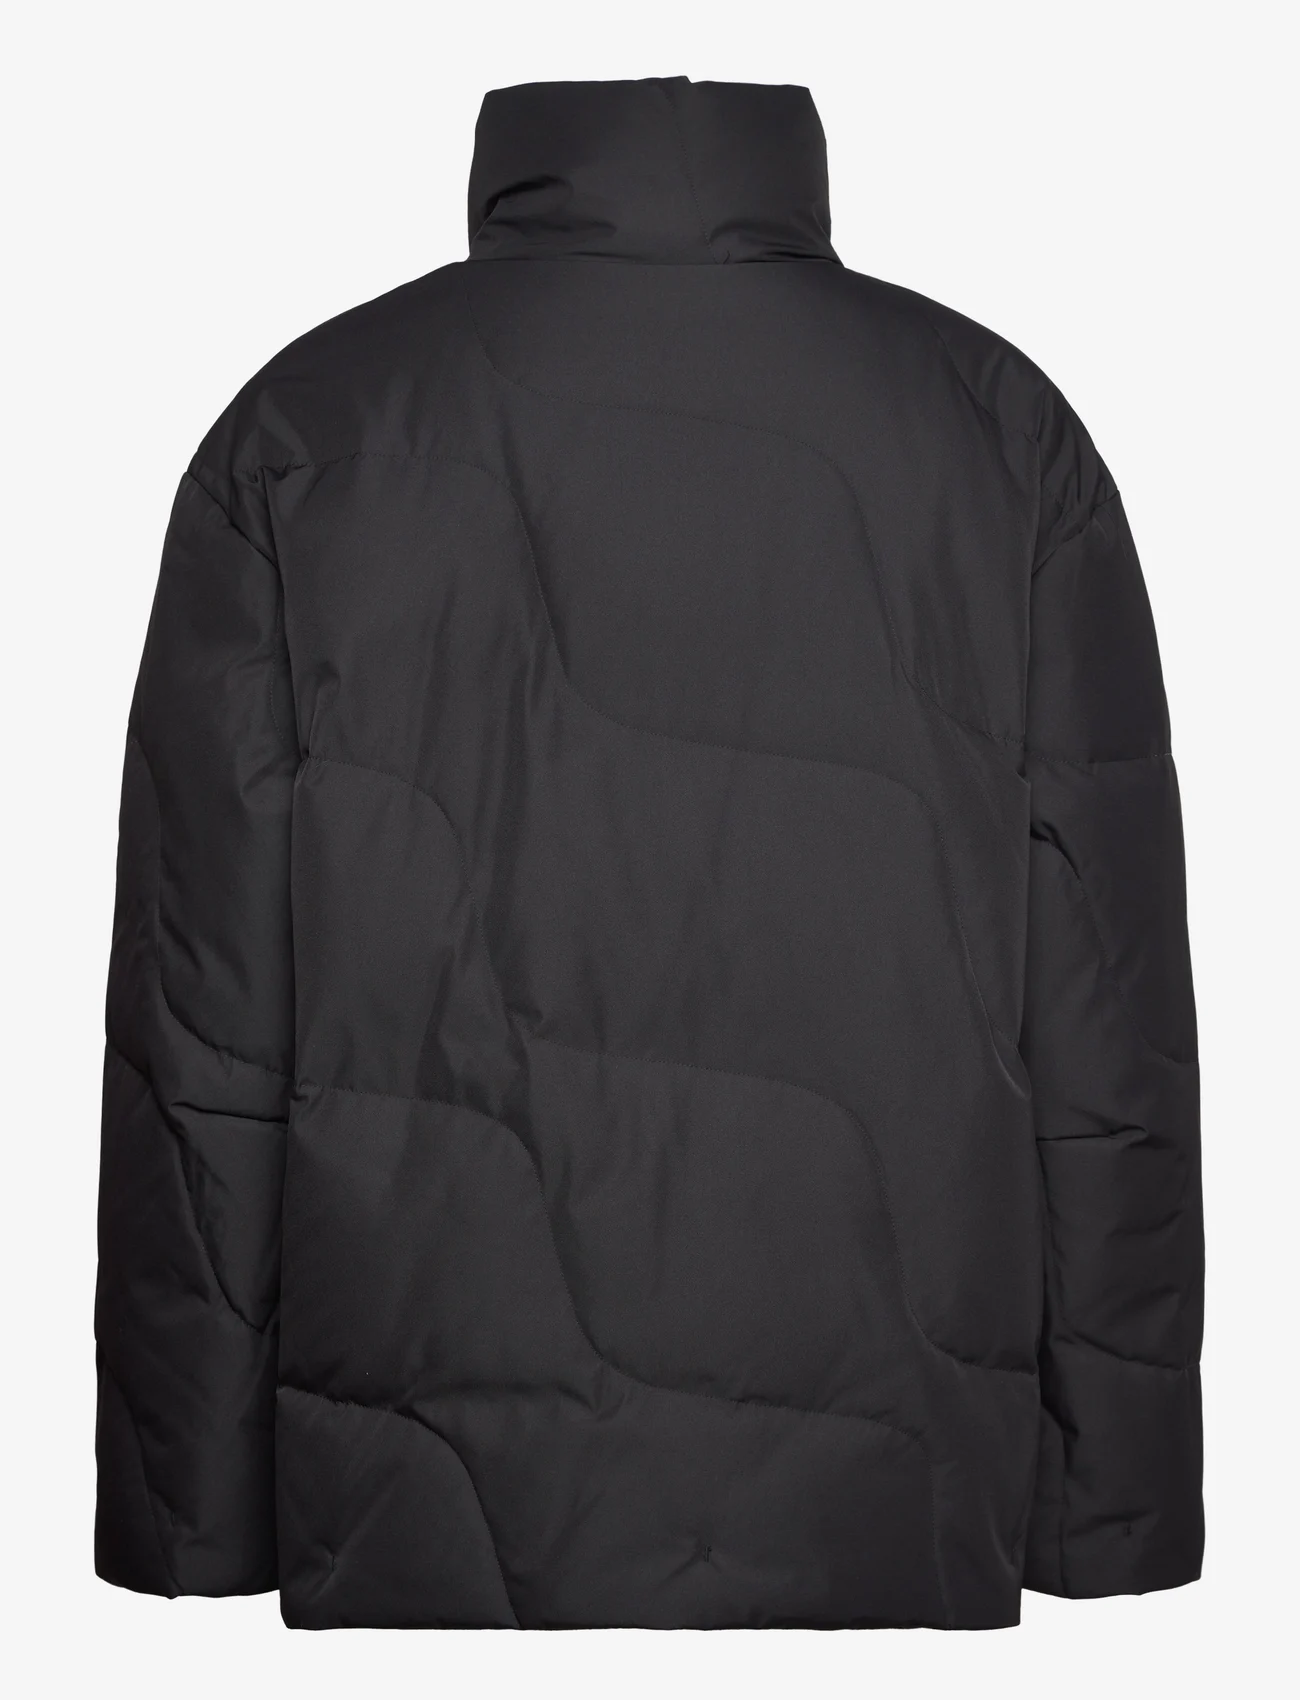 Marimekko - TEKSTUURI TAIFUUNI - winter jackets - black - 1